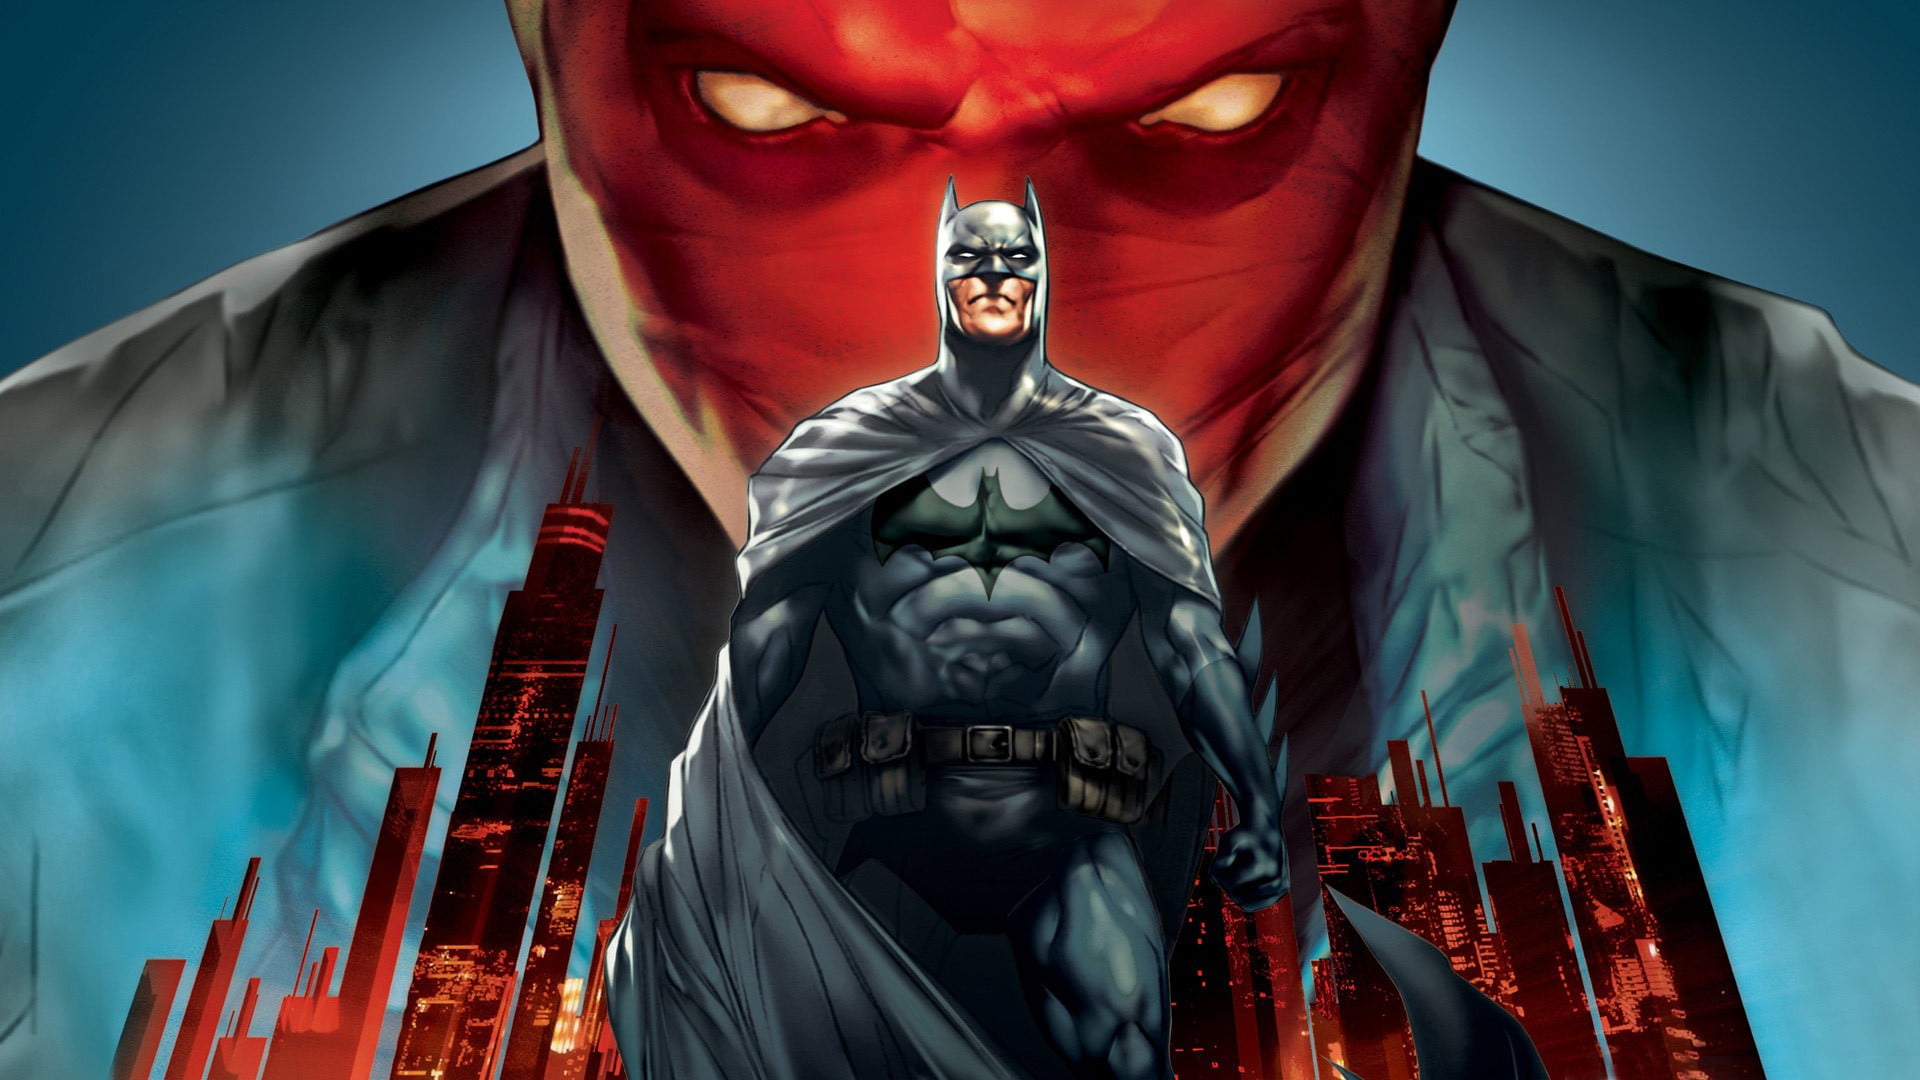 DC Batman illustration, Batman, DC Comics, video games, fantasy art HD ...